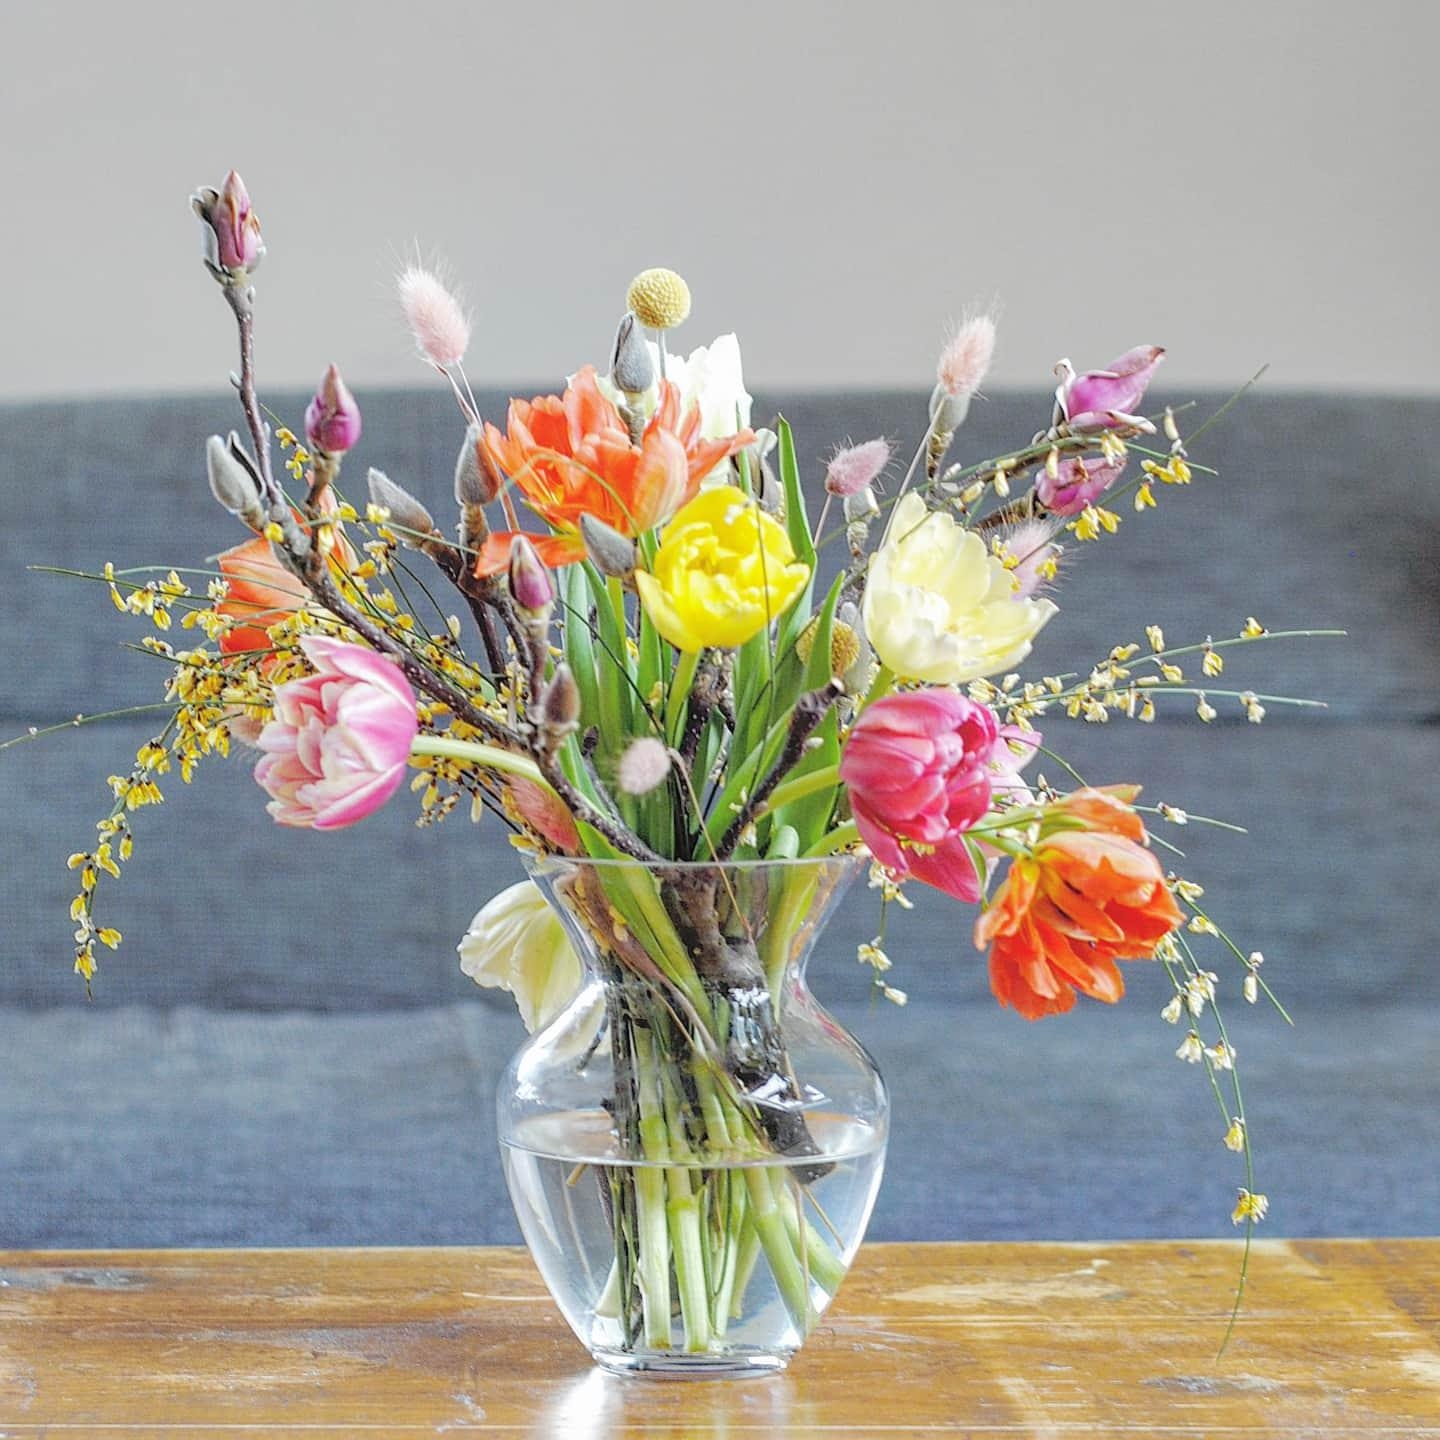 Hallo du schöne Tulpenzeit💐
#flowers #tulpen #couchliebt #couchstyle #skandistyle 